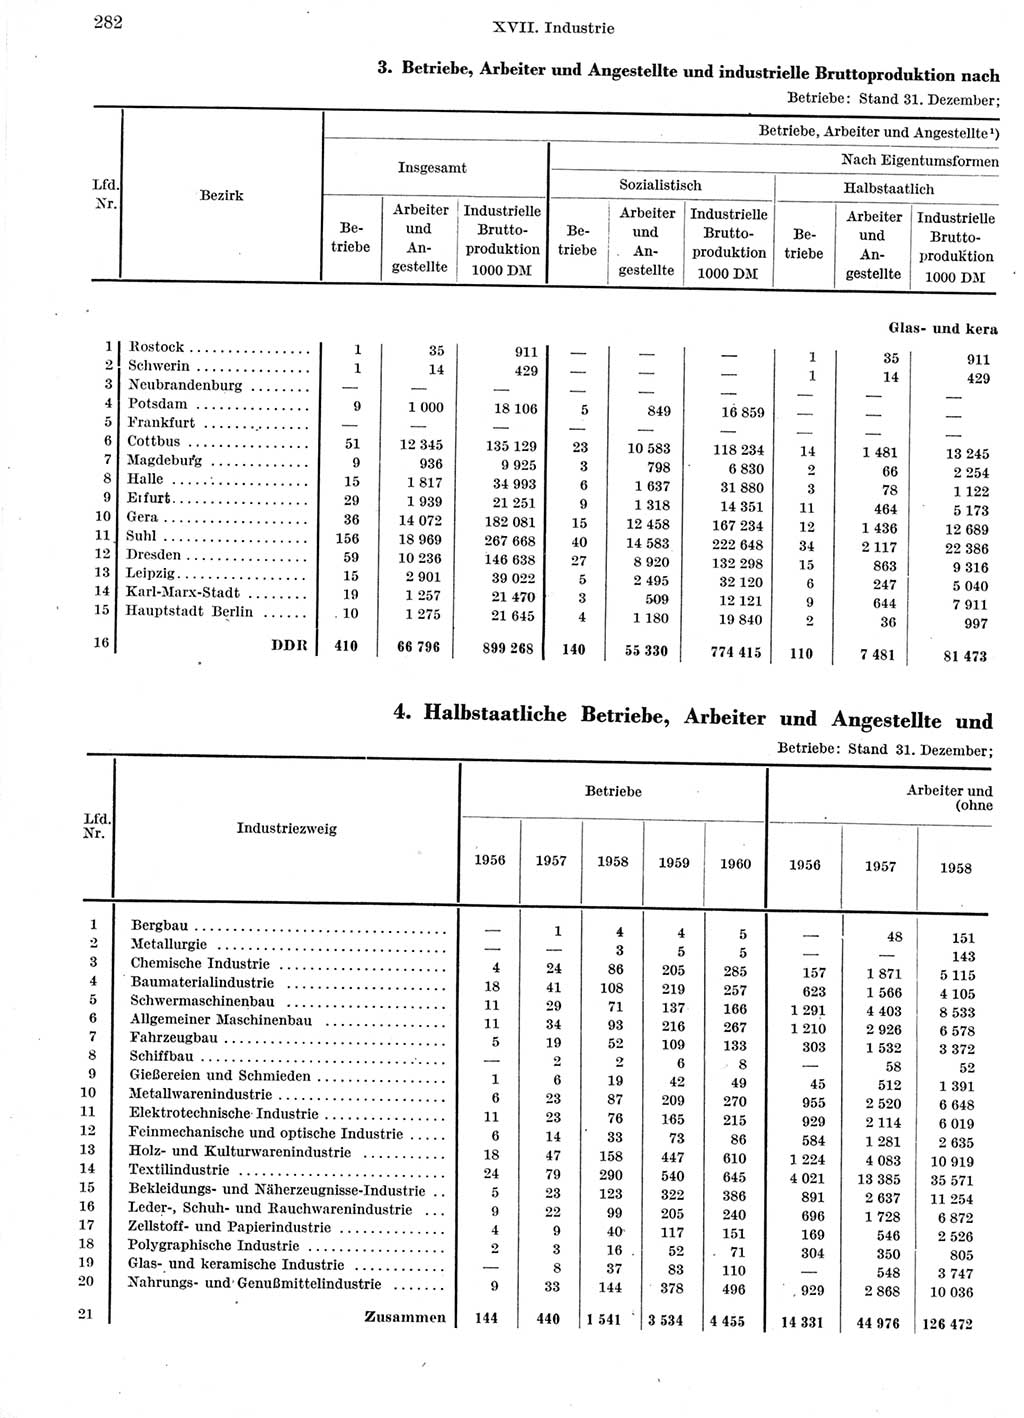 Statistisches Jahrbuch der Deutschen Demokratischen Republik (DDR) 1960-1961, Seite 282 (Stat. Jb. DDR 1960-1961, S. 282)